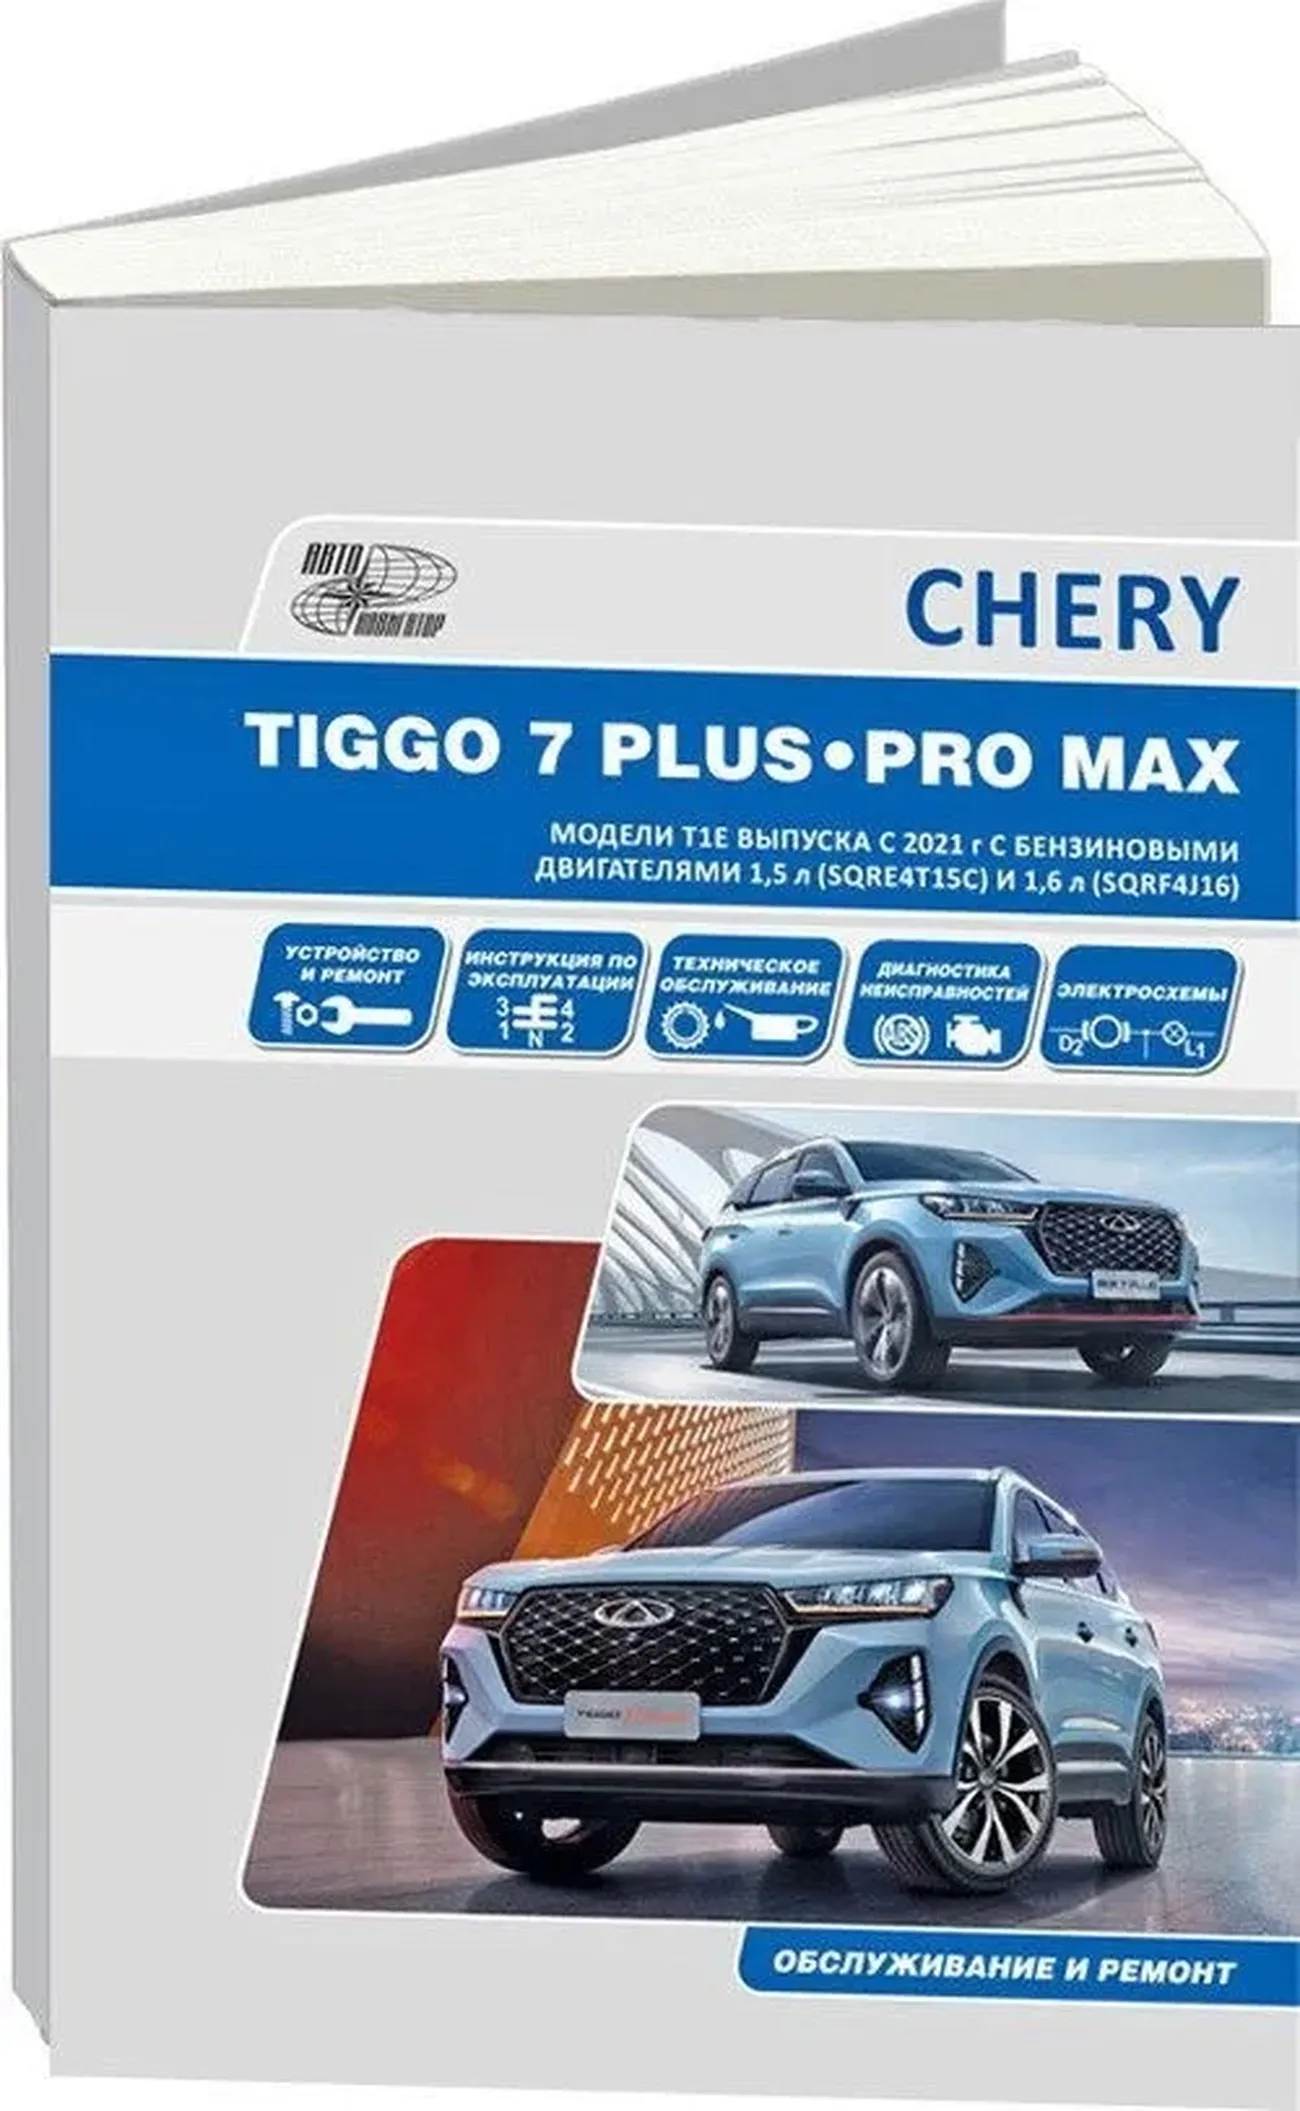 Книга: CHERY TIGGO 7 PLUS / TIGGO 7 PRO MAX (б) с 2020 г.в., рем., экспл., то | Автонавигатор